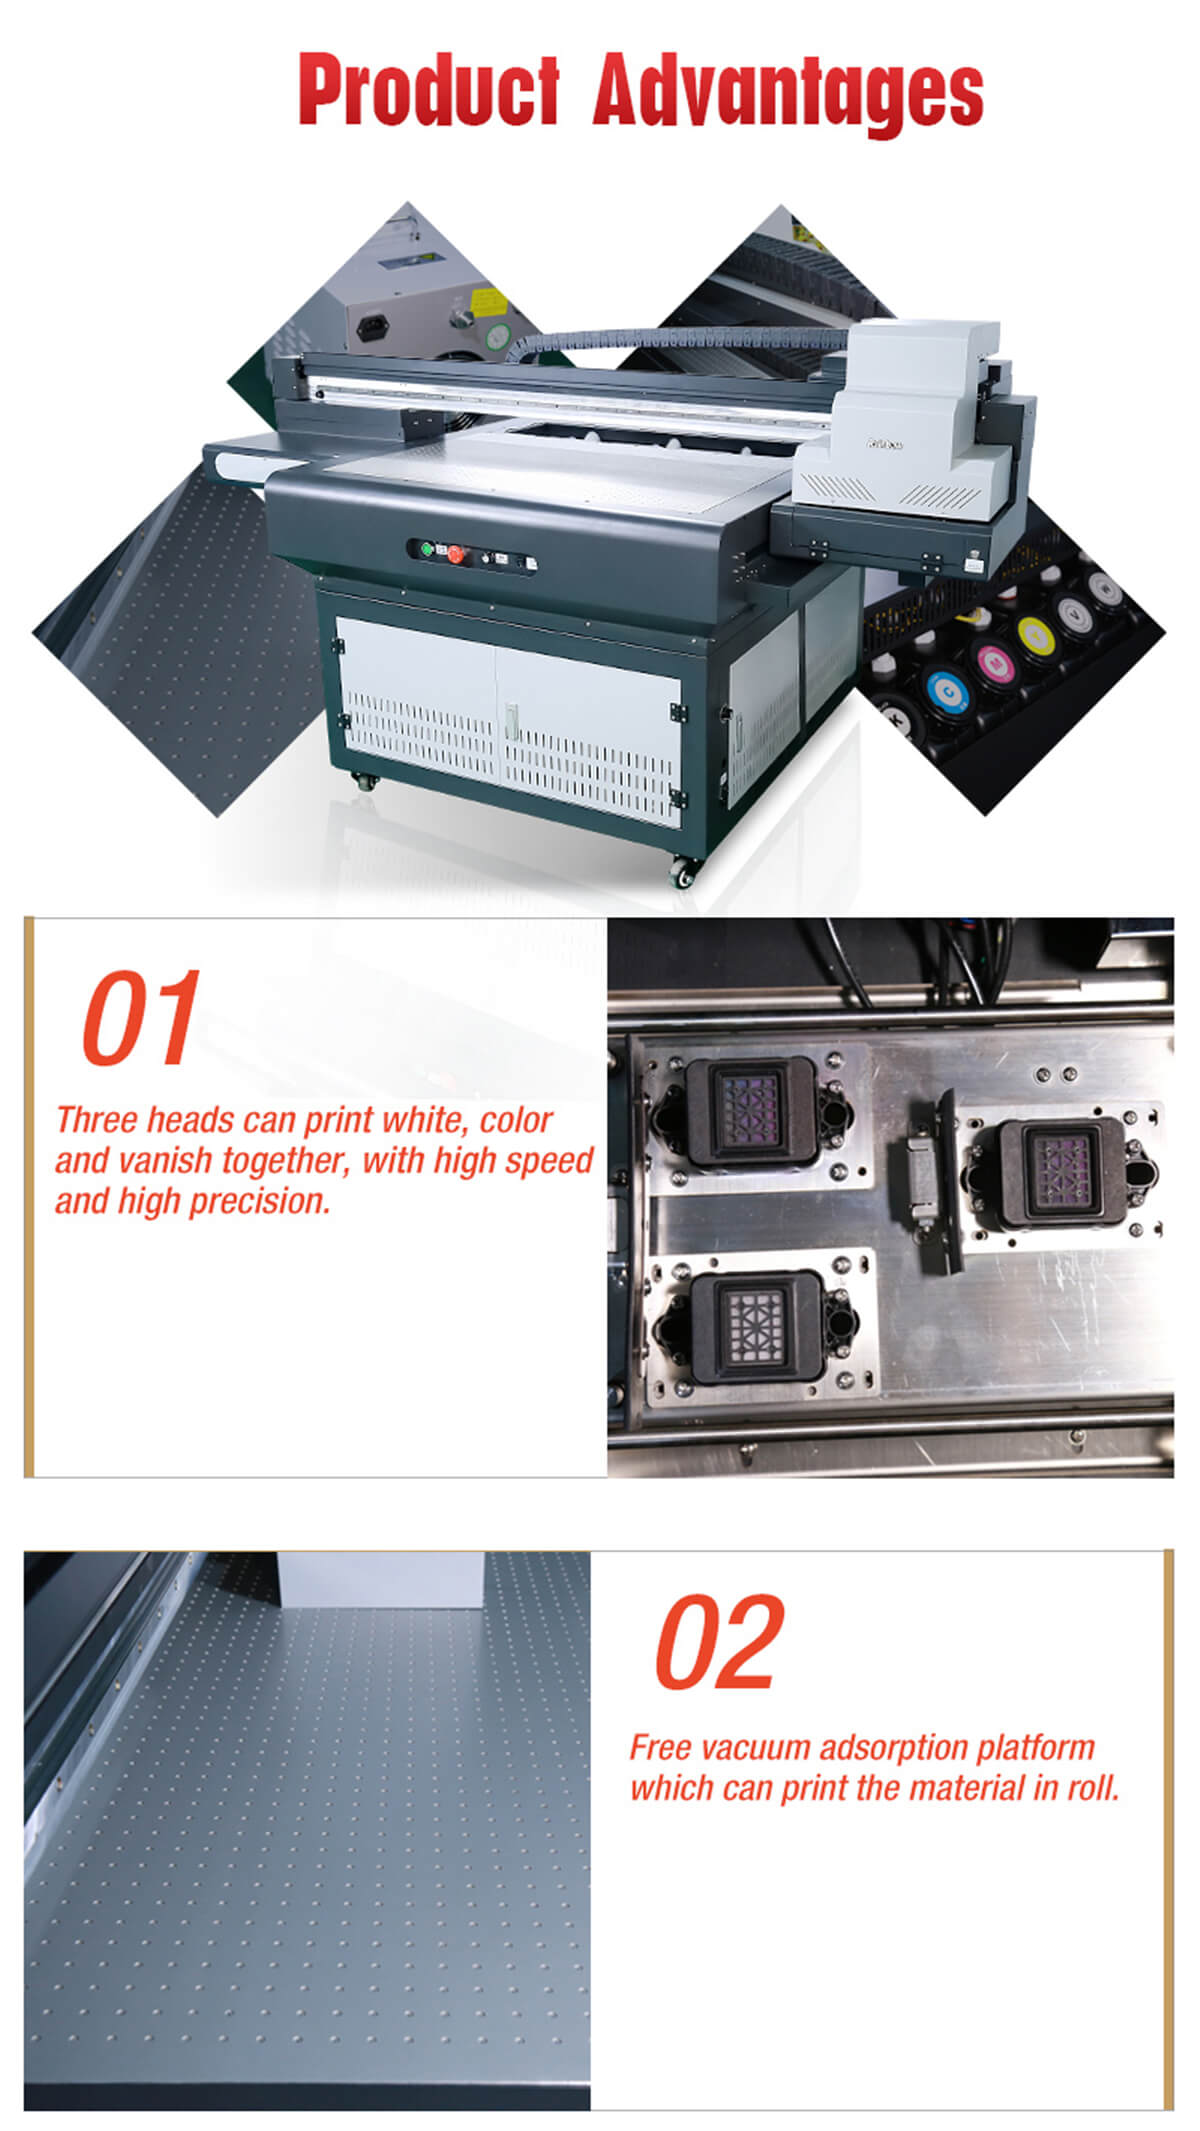 impresora epson-uv